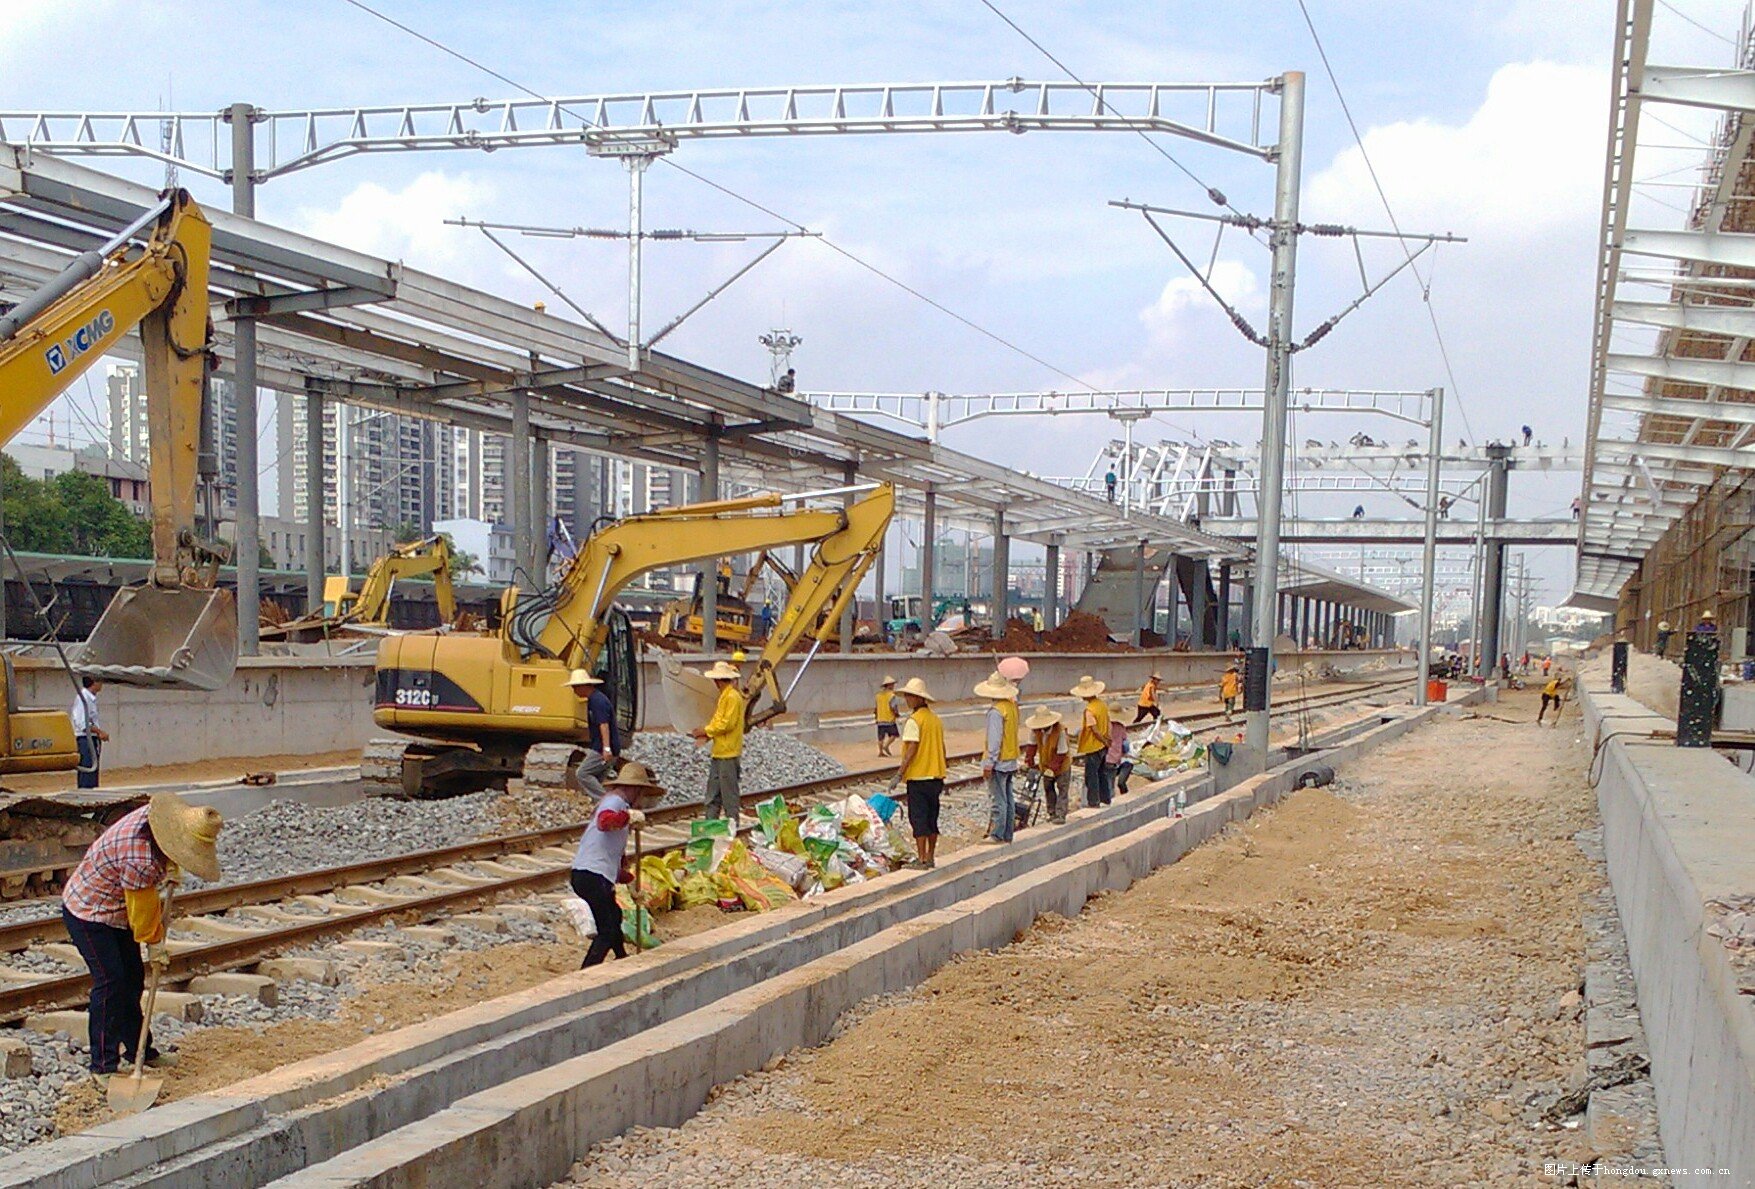 用图片记录南宁-广州(南广)高速铁路的建设